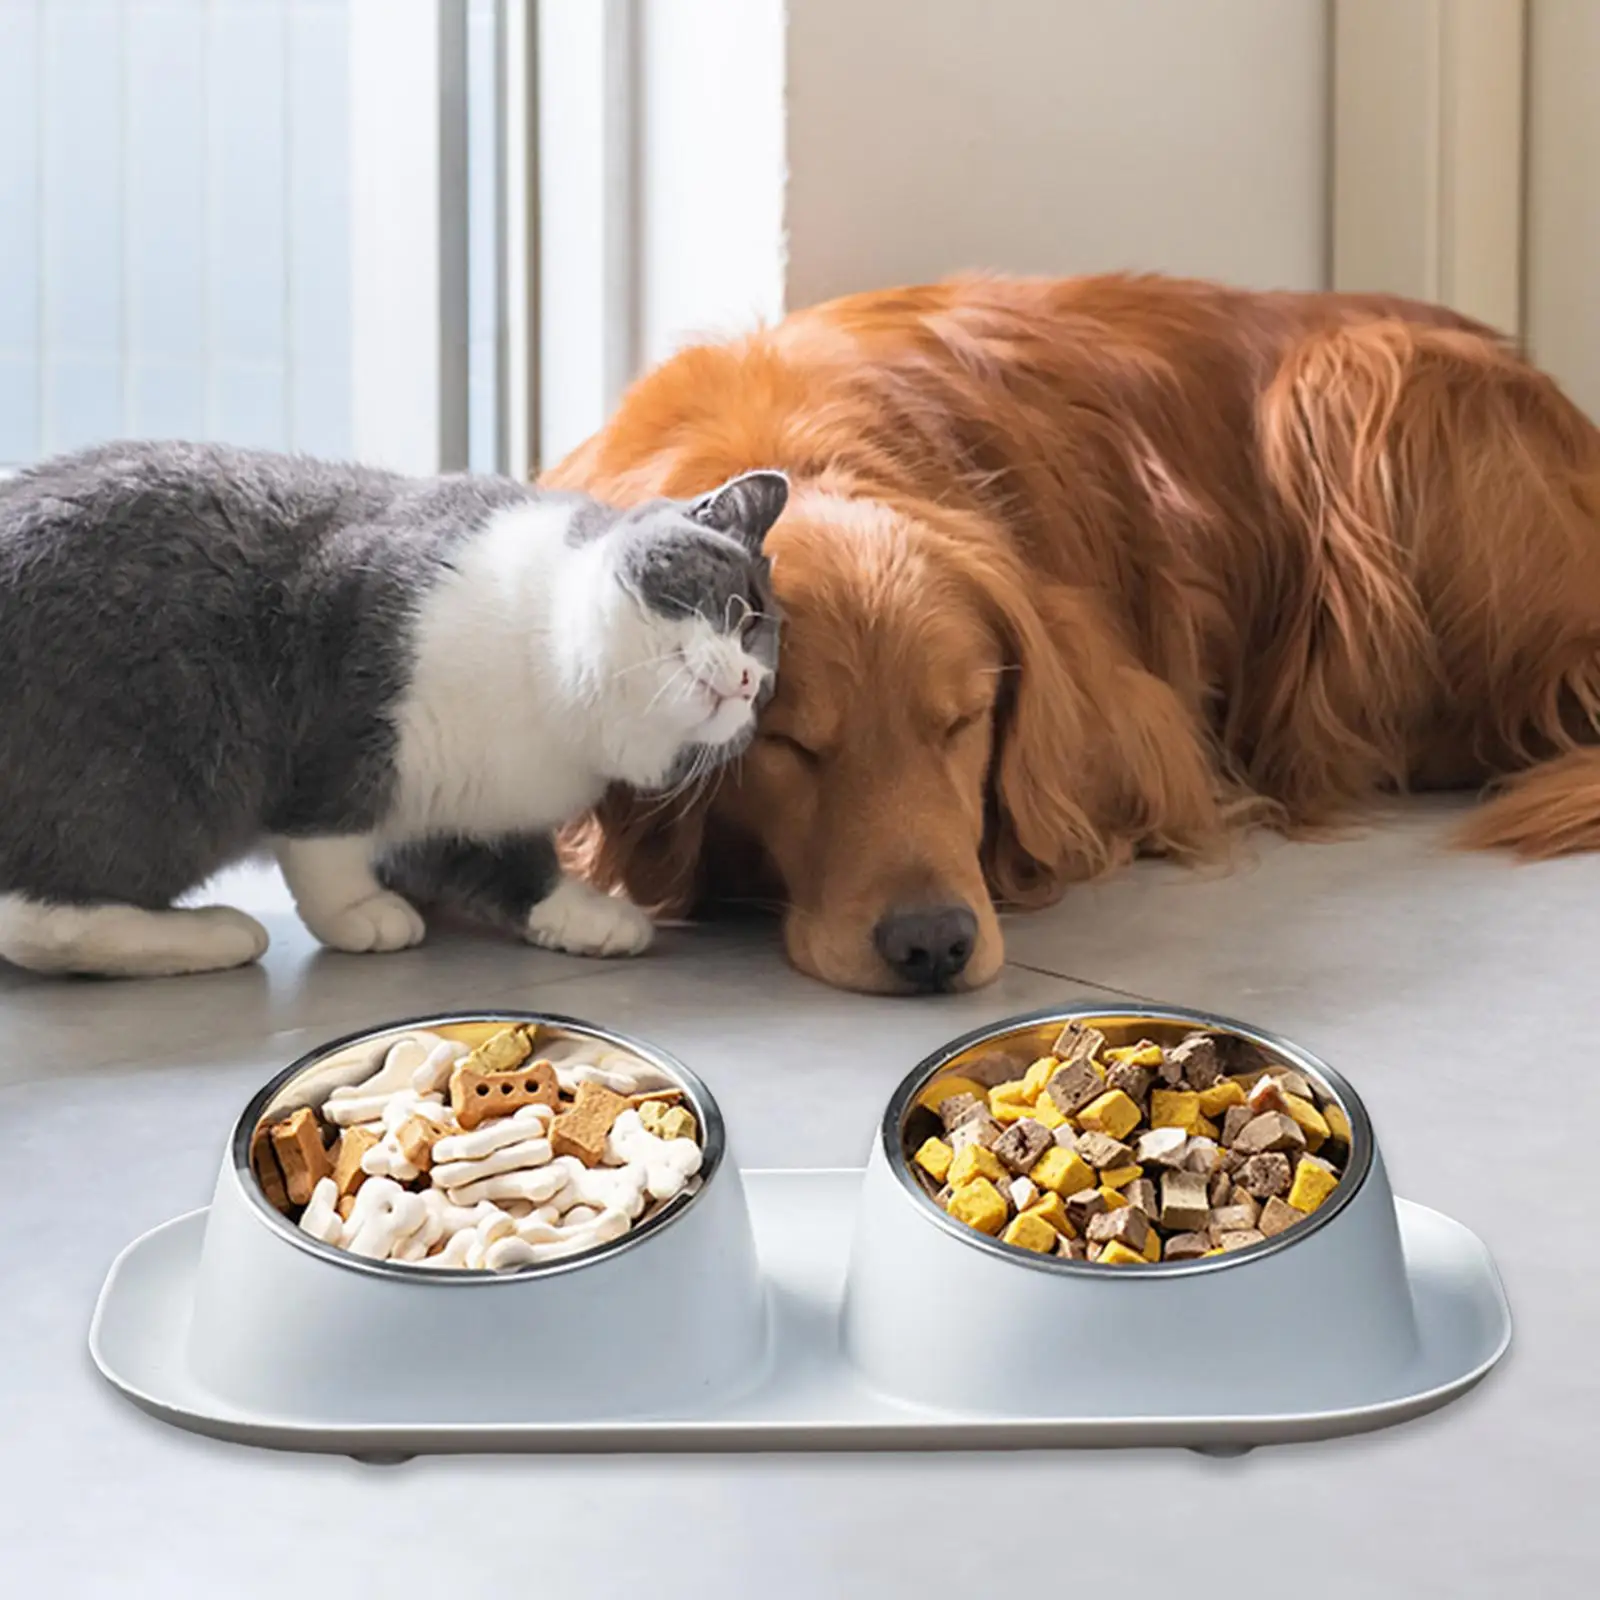 Двойная миска для собаки, двойная миска для кошки-собаки, приподнятый контейнер, миски для кормушки для домашних животных